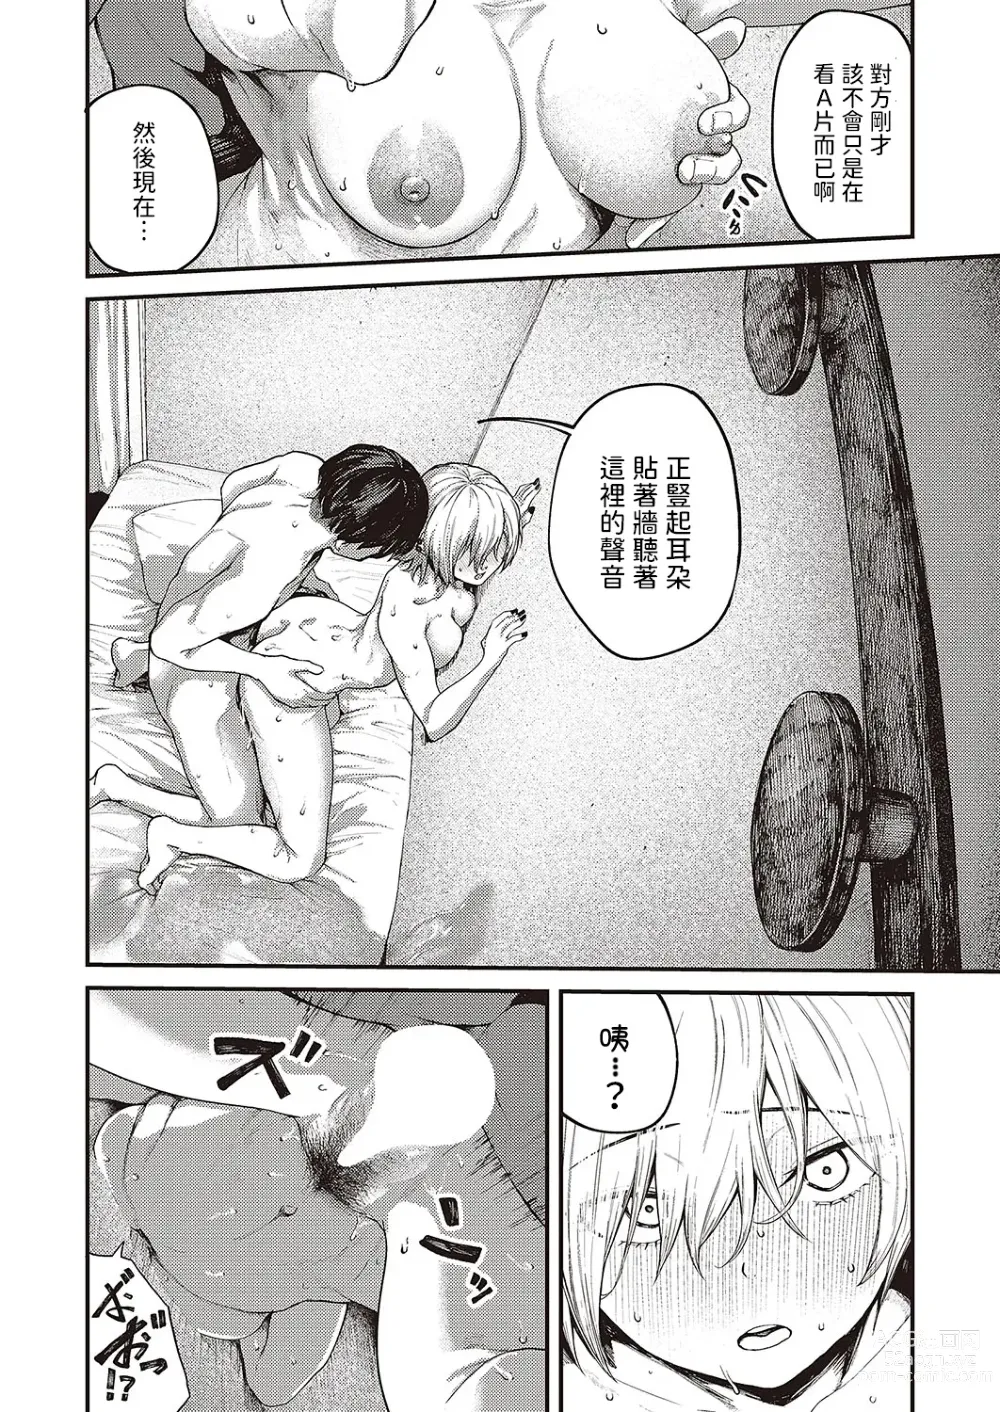 Page 21 of manga Tooriame